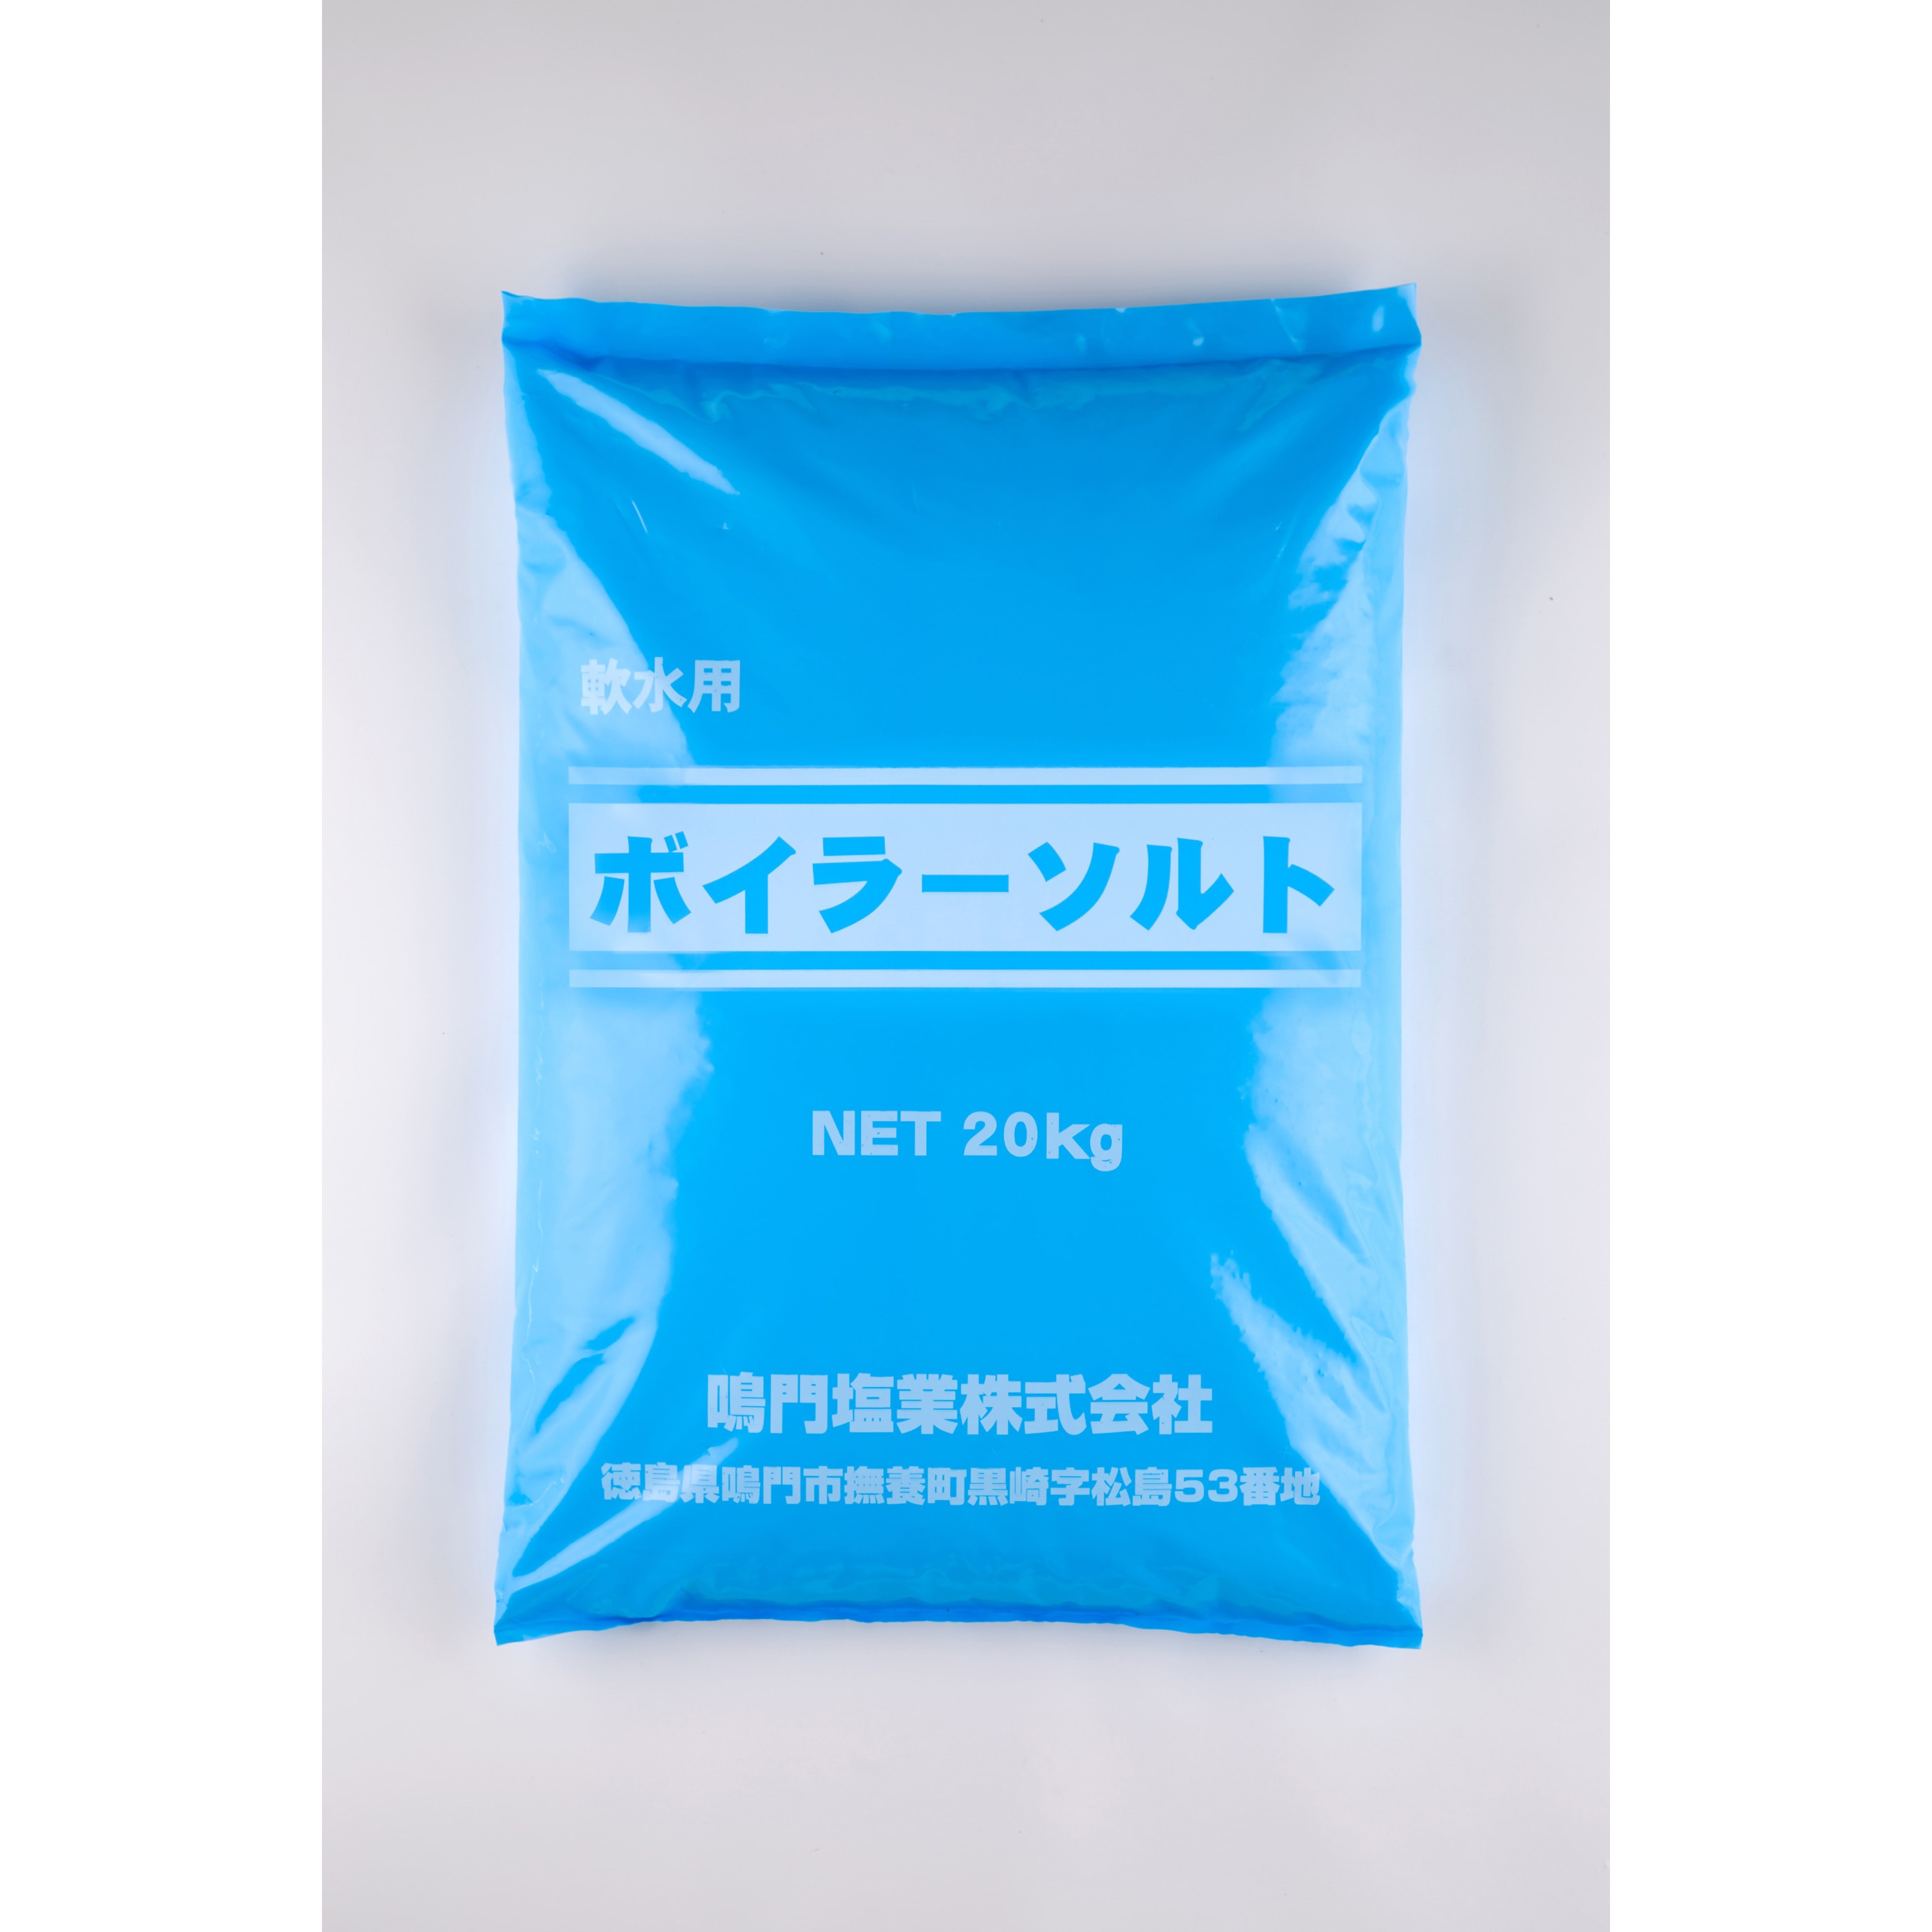 ボイラーソルト 1袋(20kg) 鳴門塩業 【通販サイトMonotaRO】